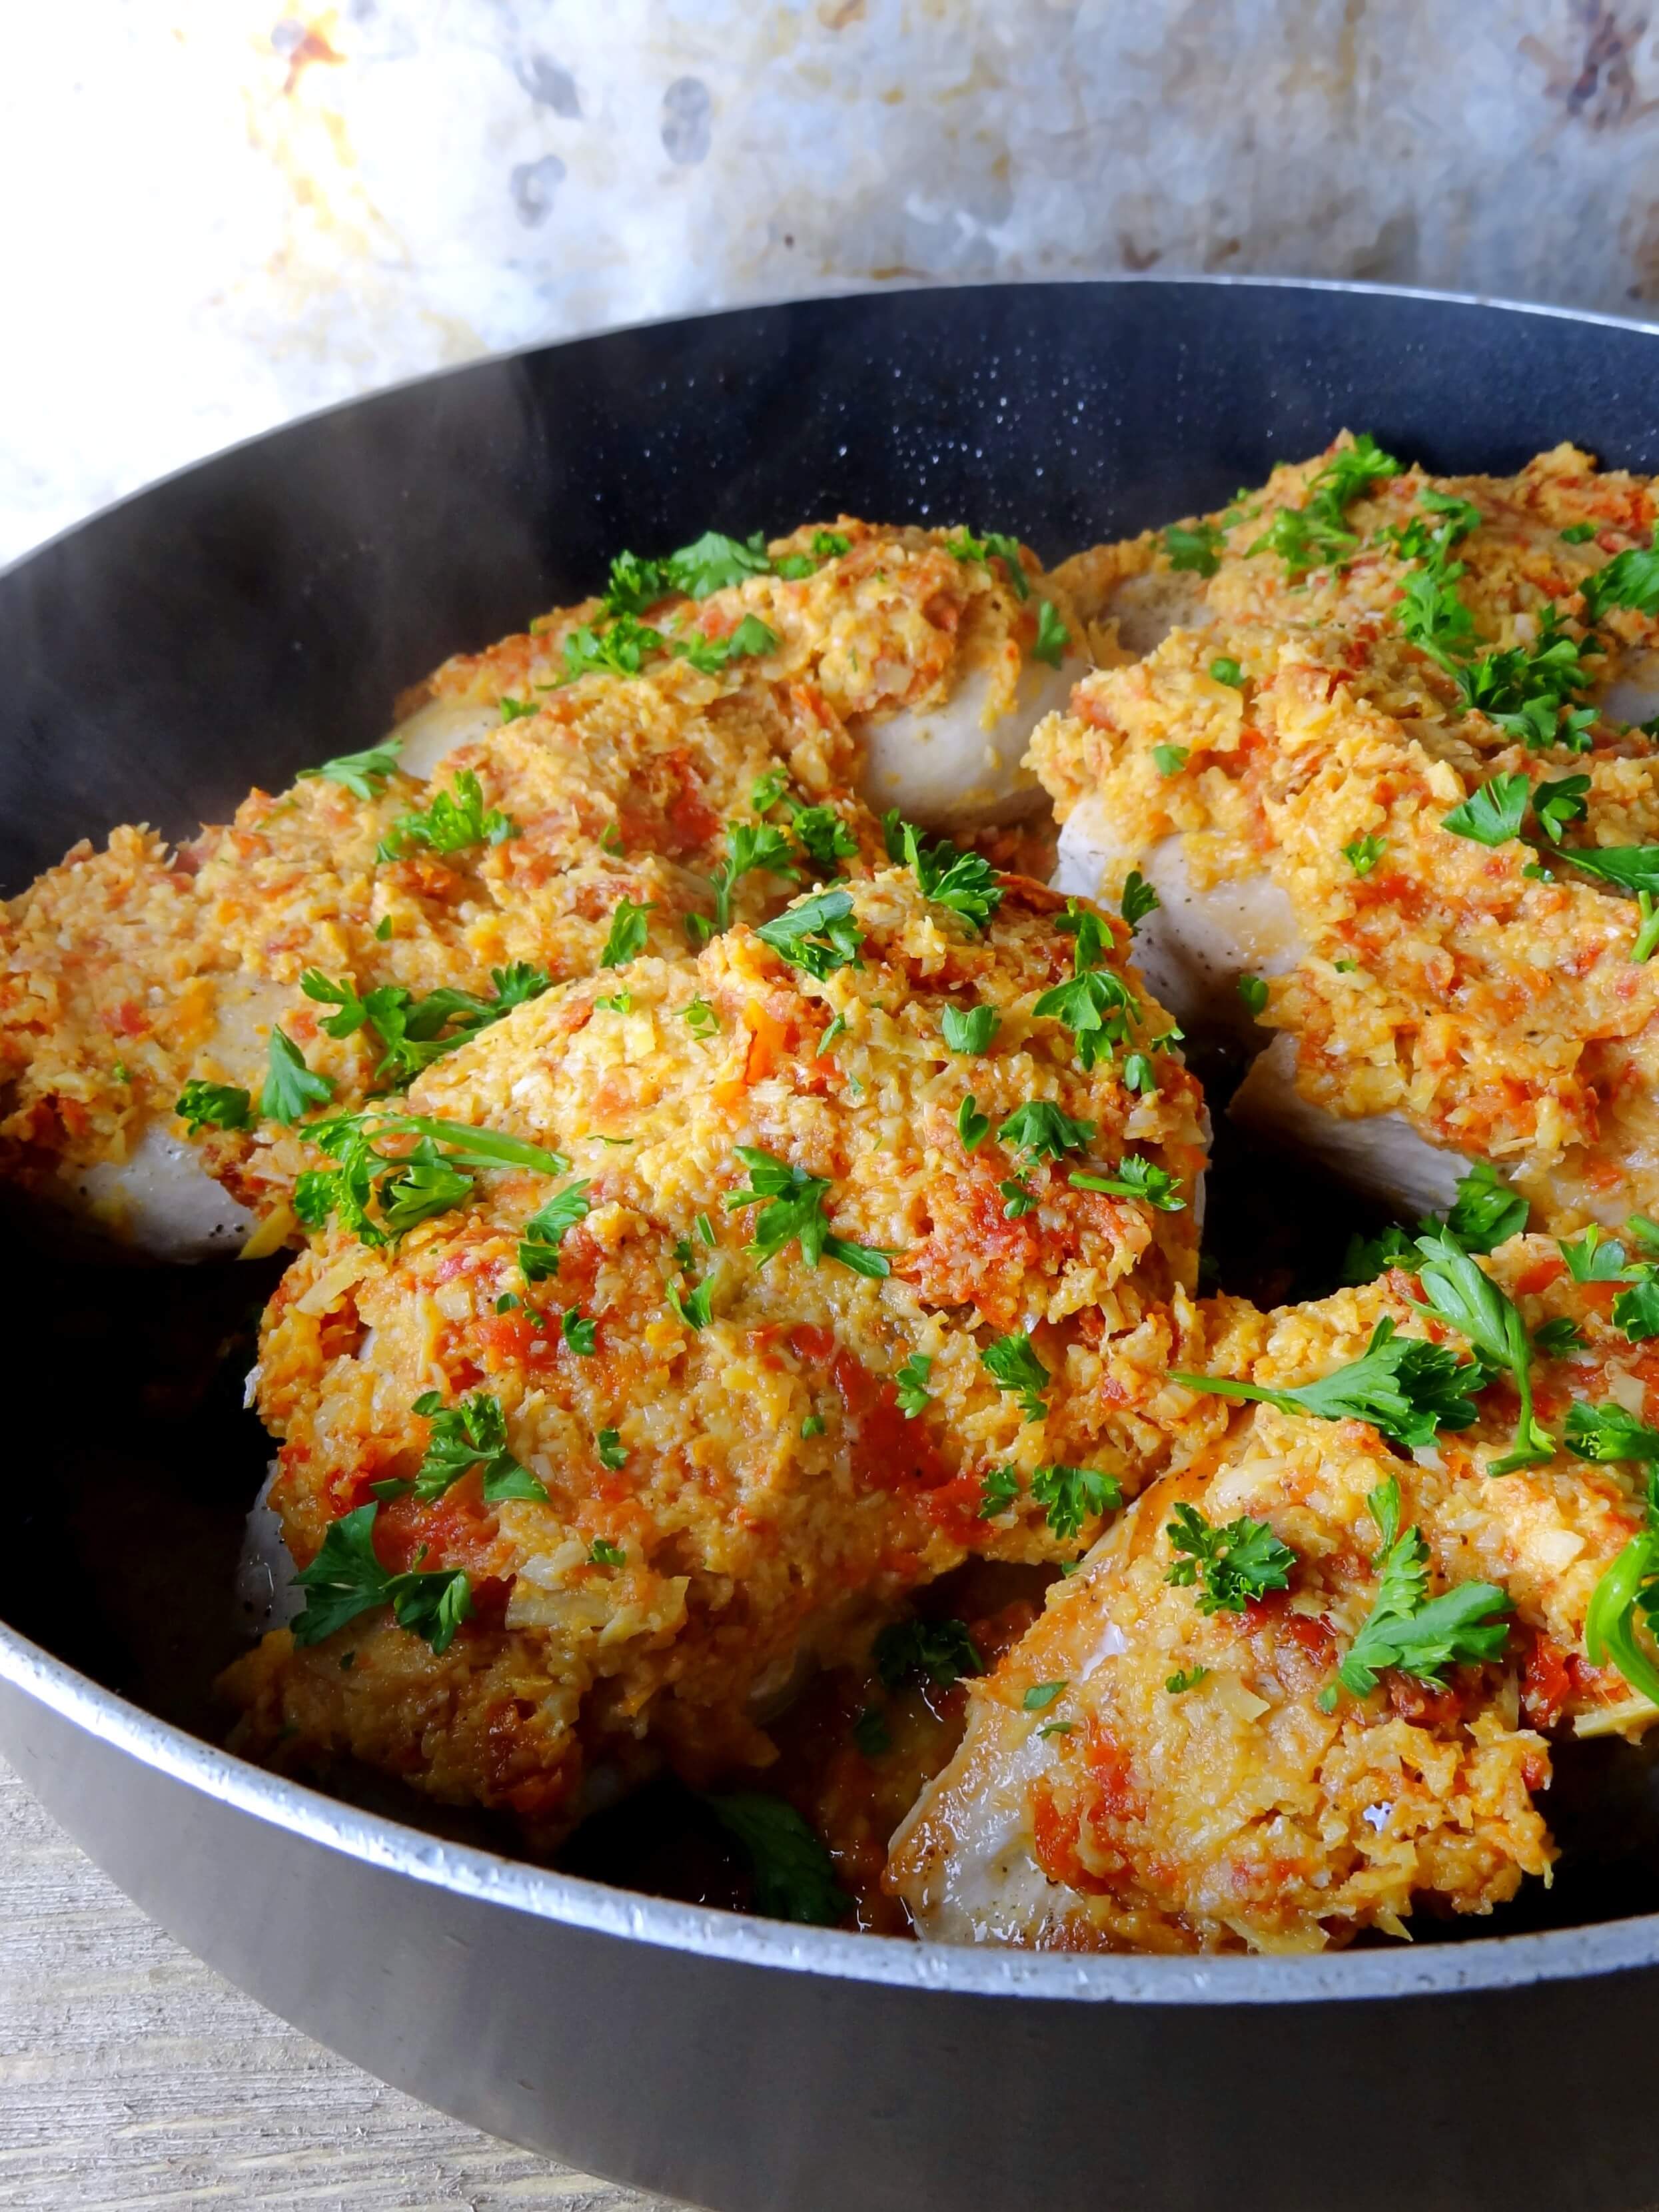 easy chicken breast recipes, chicken breast recipes, artichoke chicken breast recipes